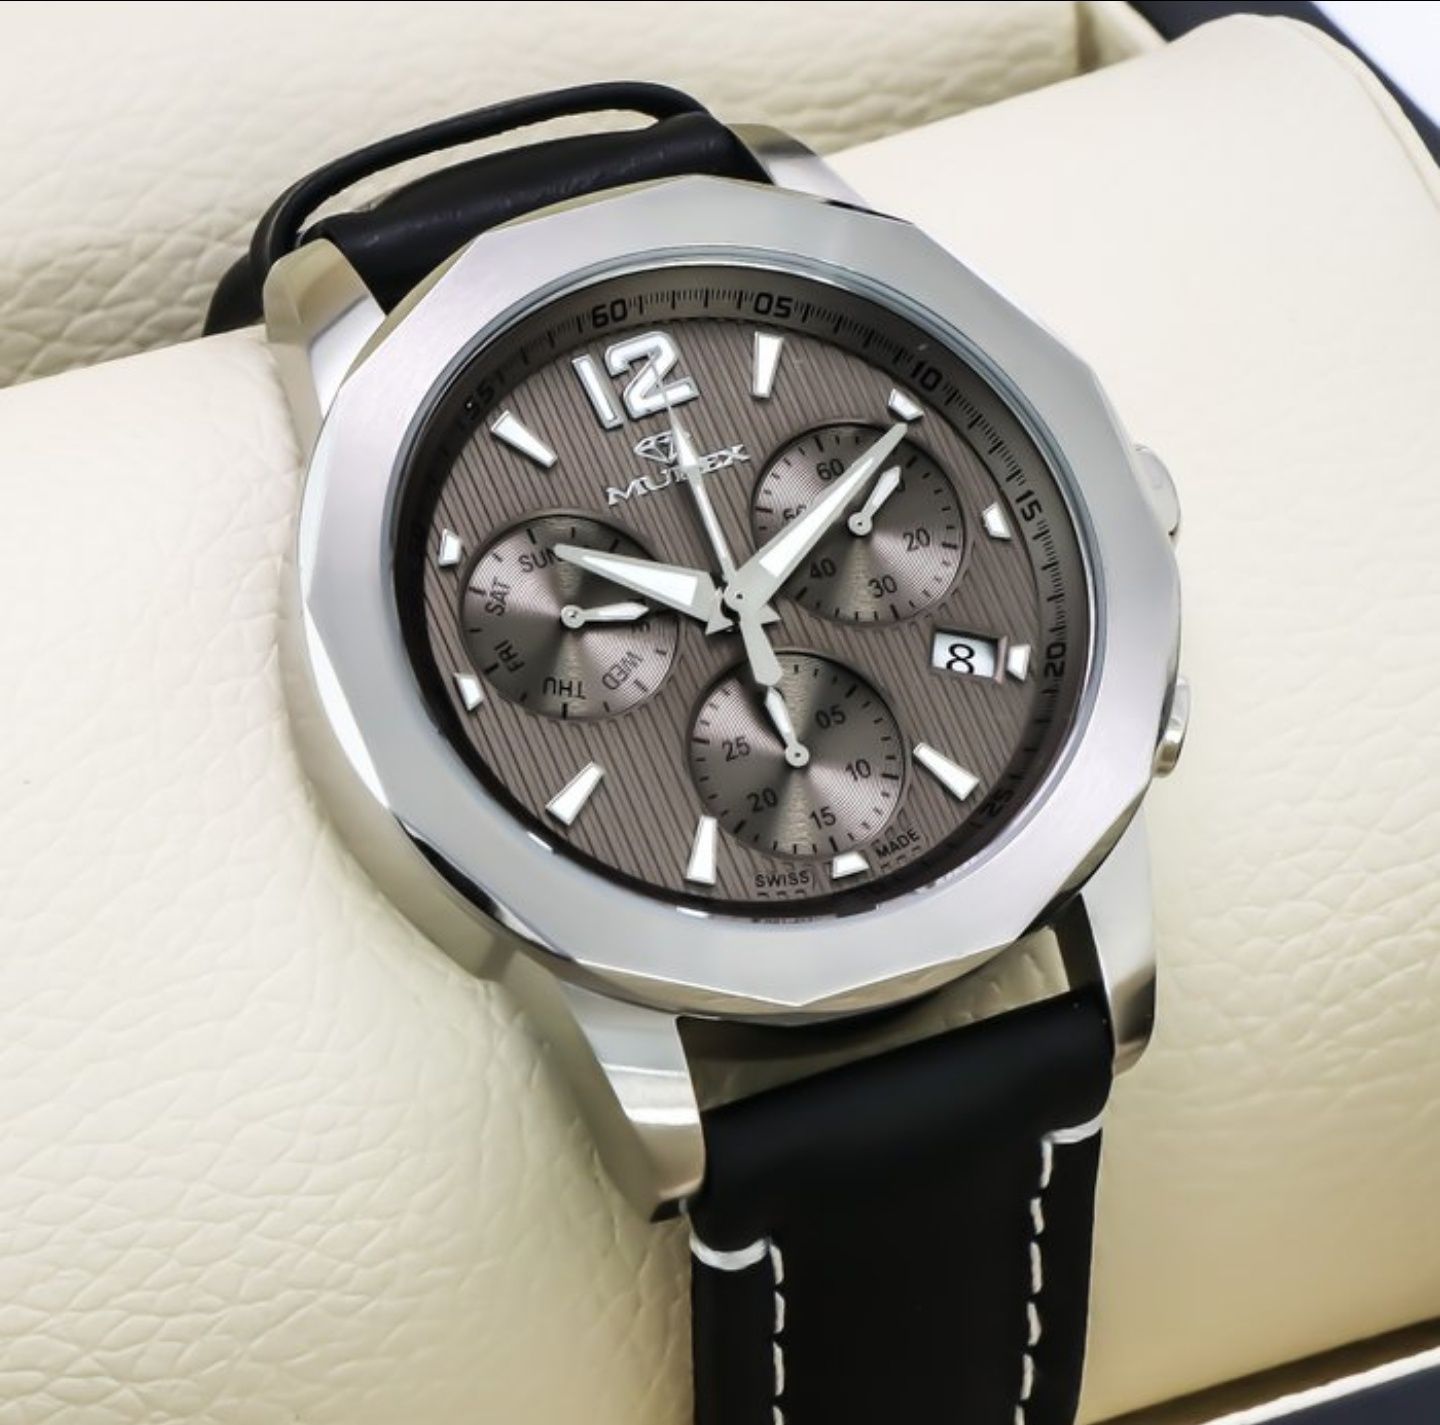 Nowy, szwajcarski zegarek Murex. Gwarancja.